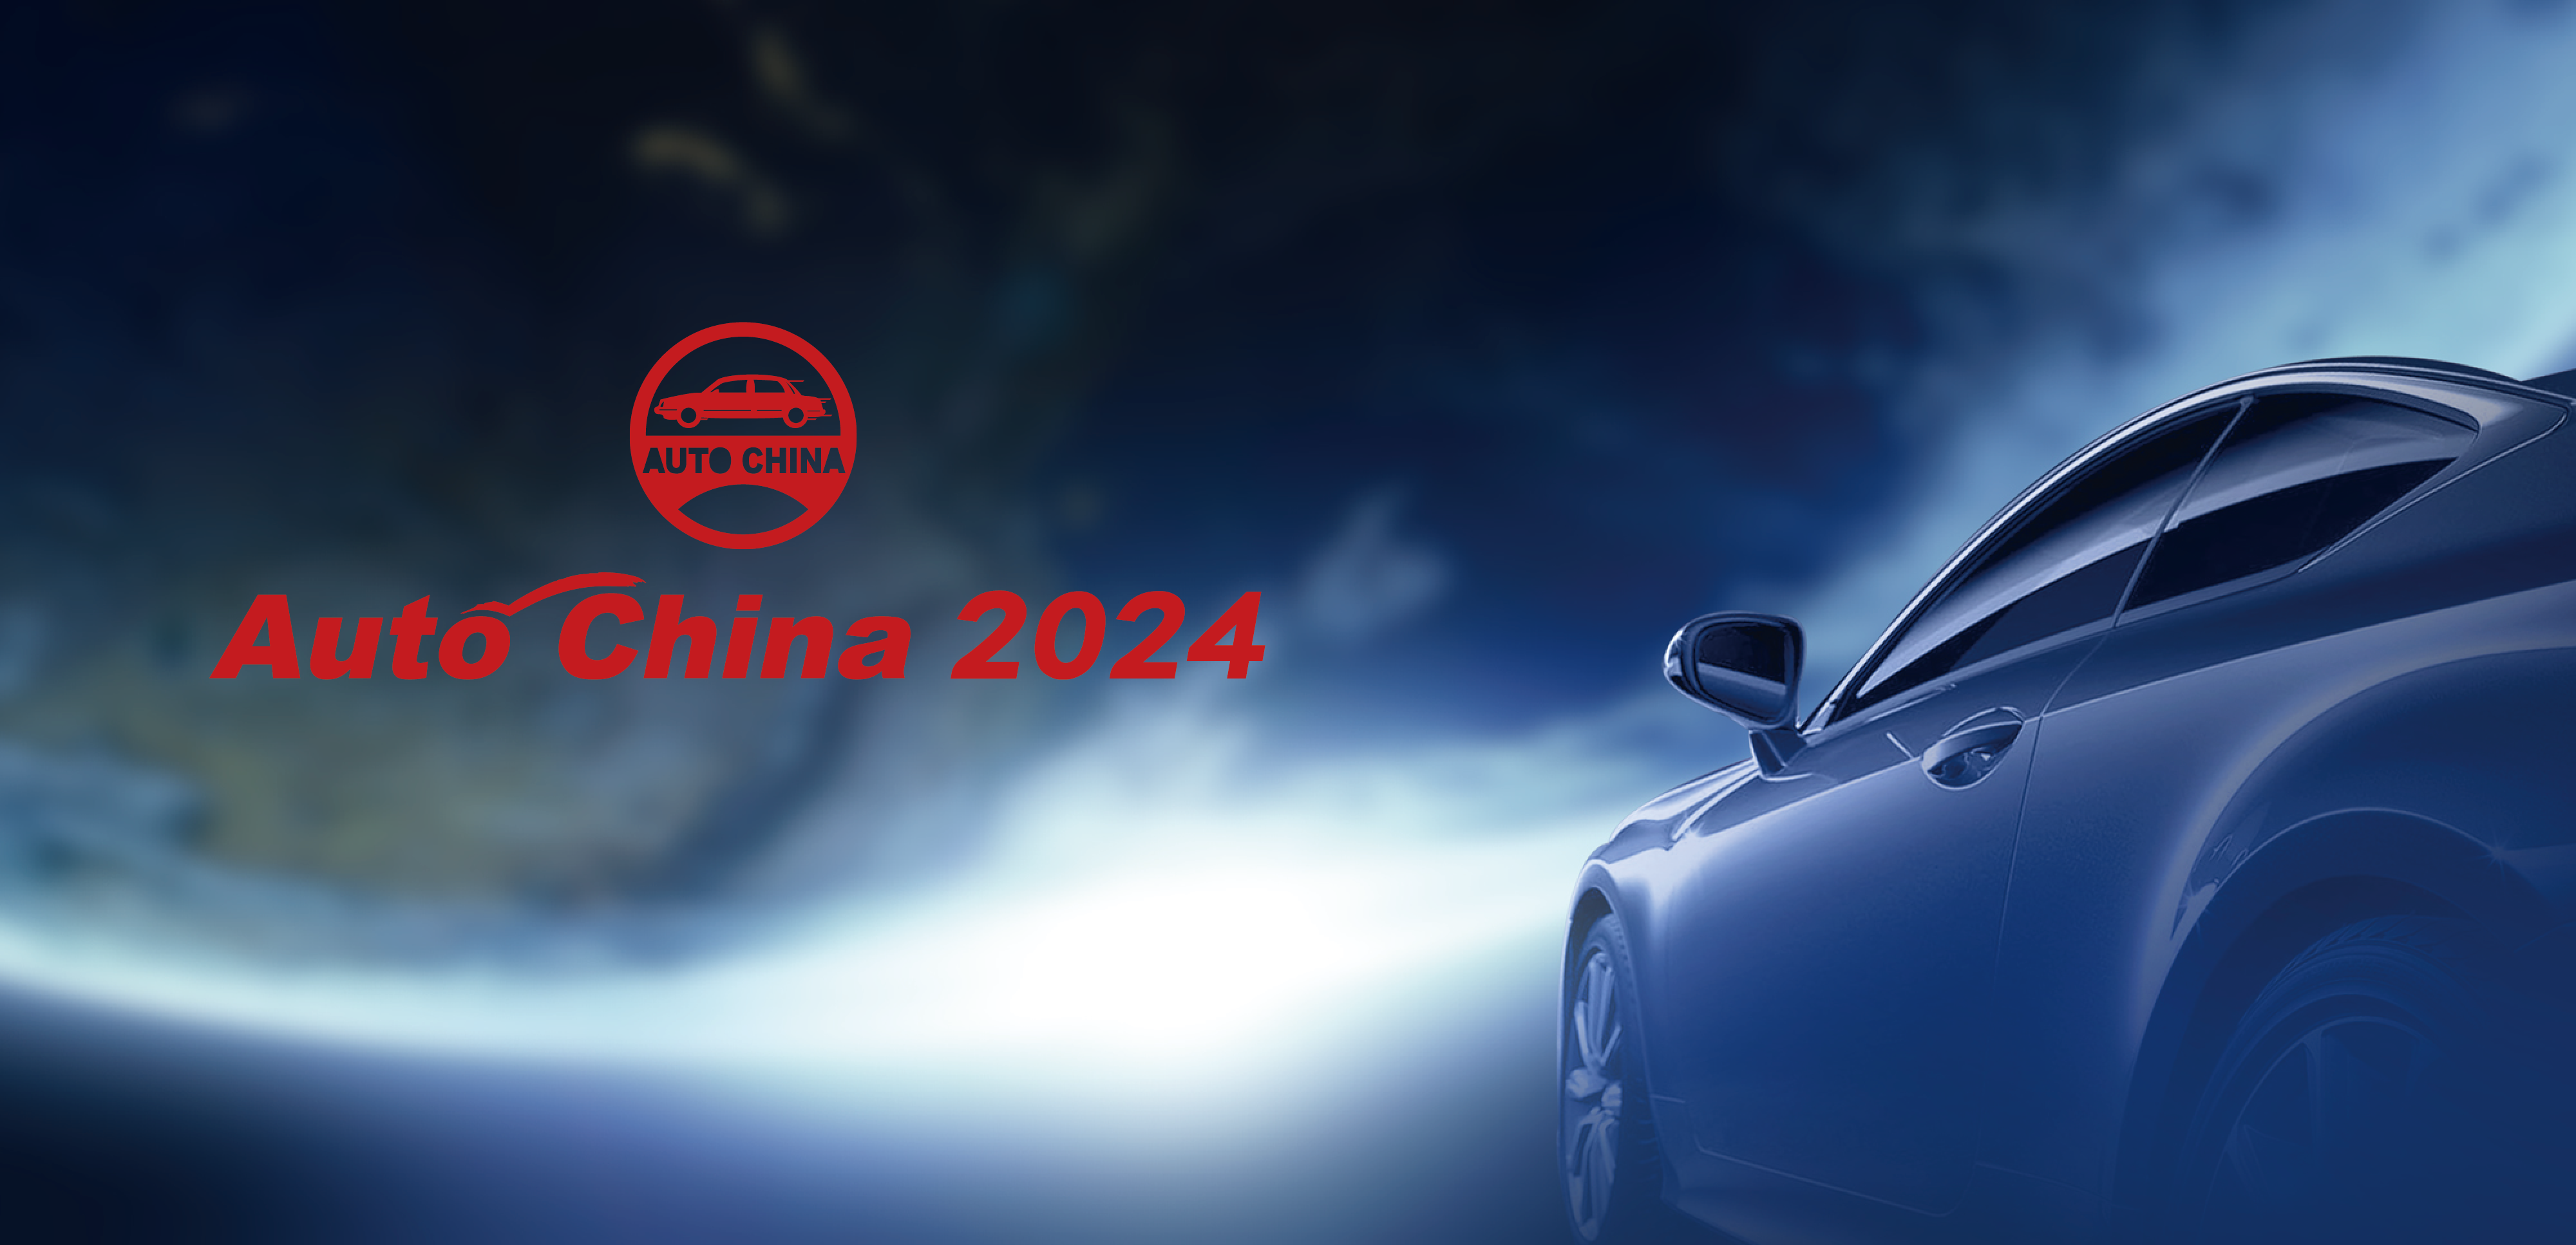 北京车展展位分布图重磅来袭！_2024北京国际汽车展览会-未来出行展-汽车技术展-汽车芯技术展